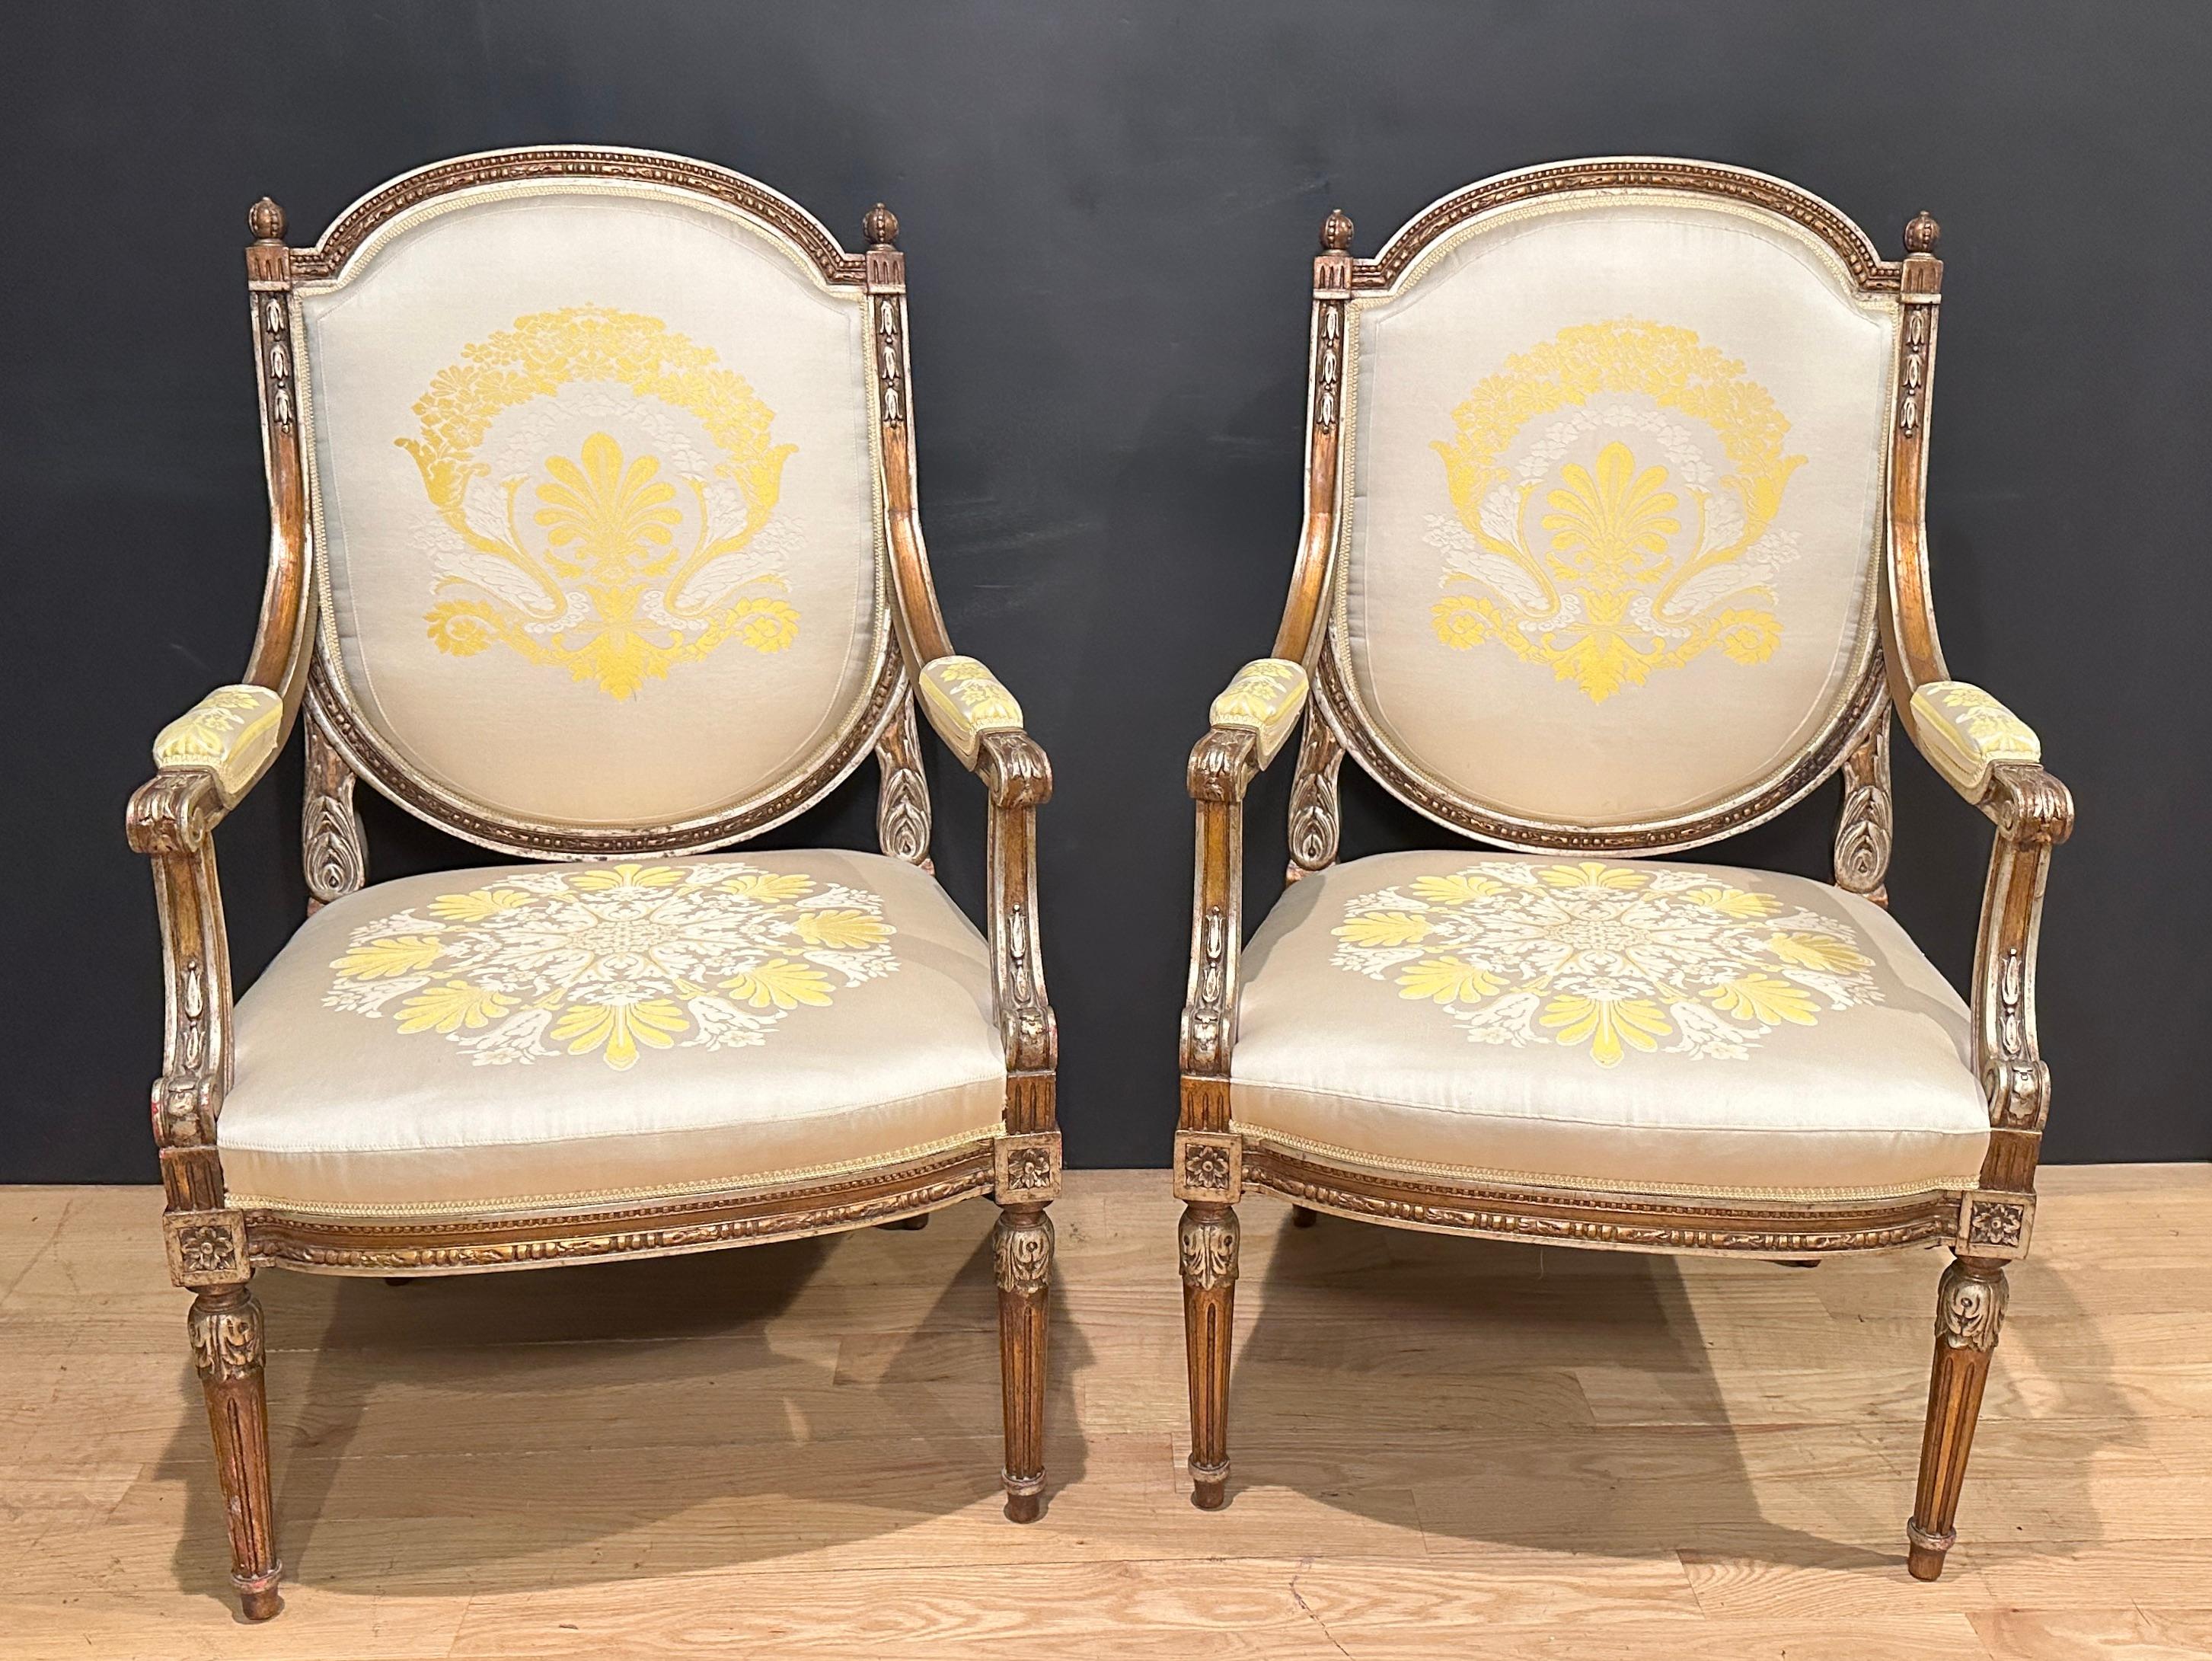 Feines Paar antiker französischer Sessel im Louis XVI-Stil/Fauteuils. Silberne vergoldete Details mit bronzefarbenem Goldgrund. Gepolstert mit champagnerfarbenem Seidenbrokat mit goldenen und elfenbeinfarbenen Akzenten.